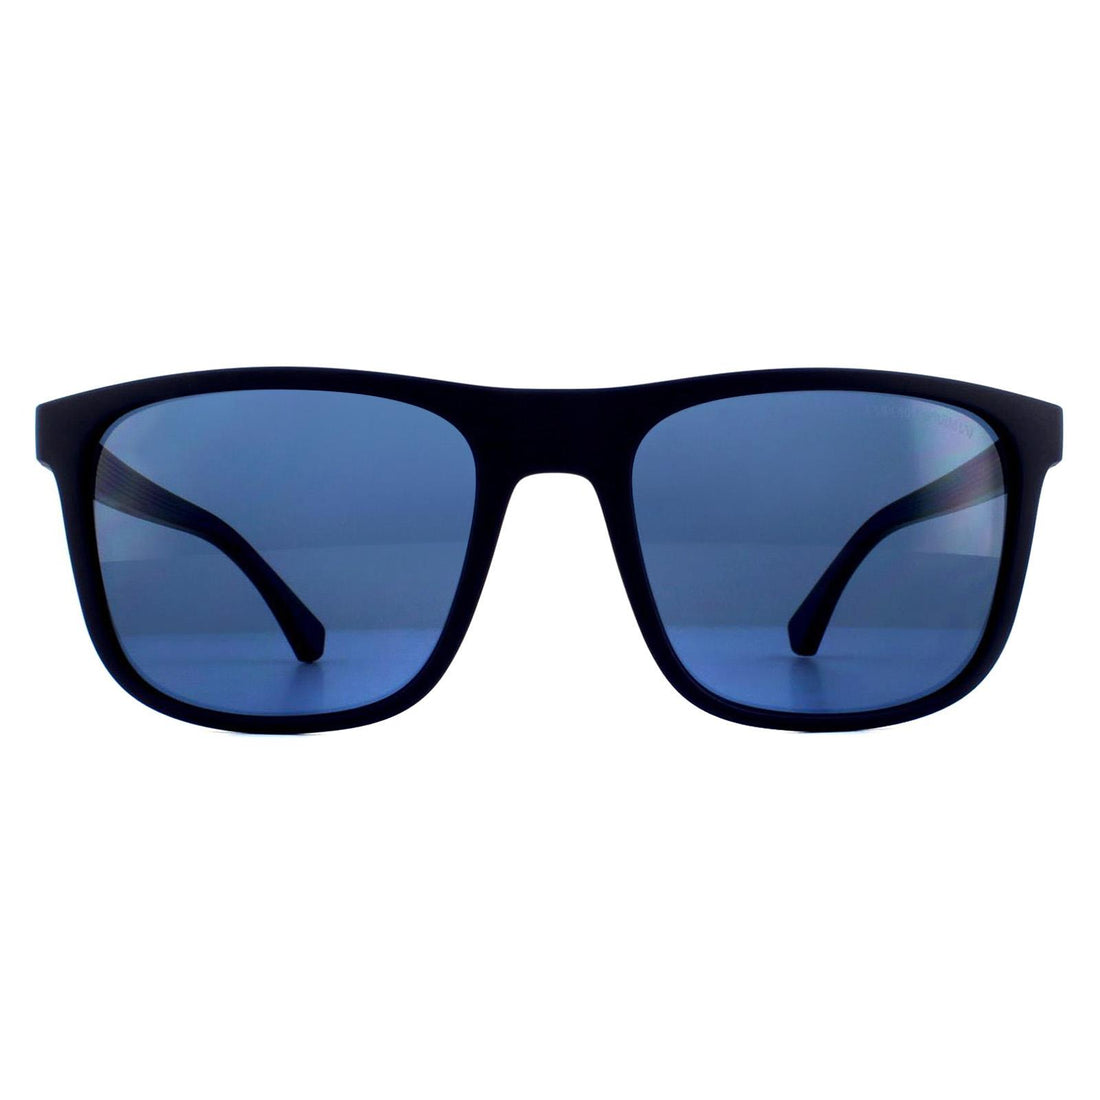 Emporio Armani EA4129 Sunglasses Matte Blue / Blue